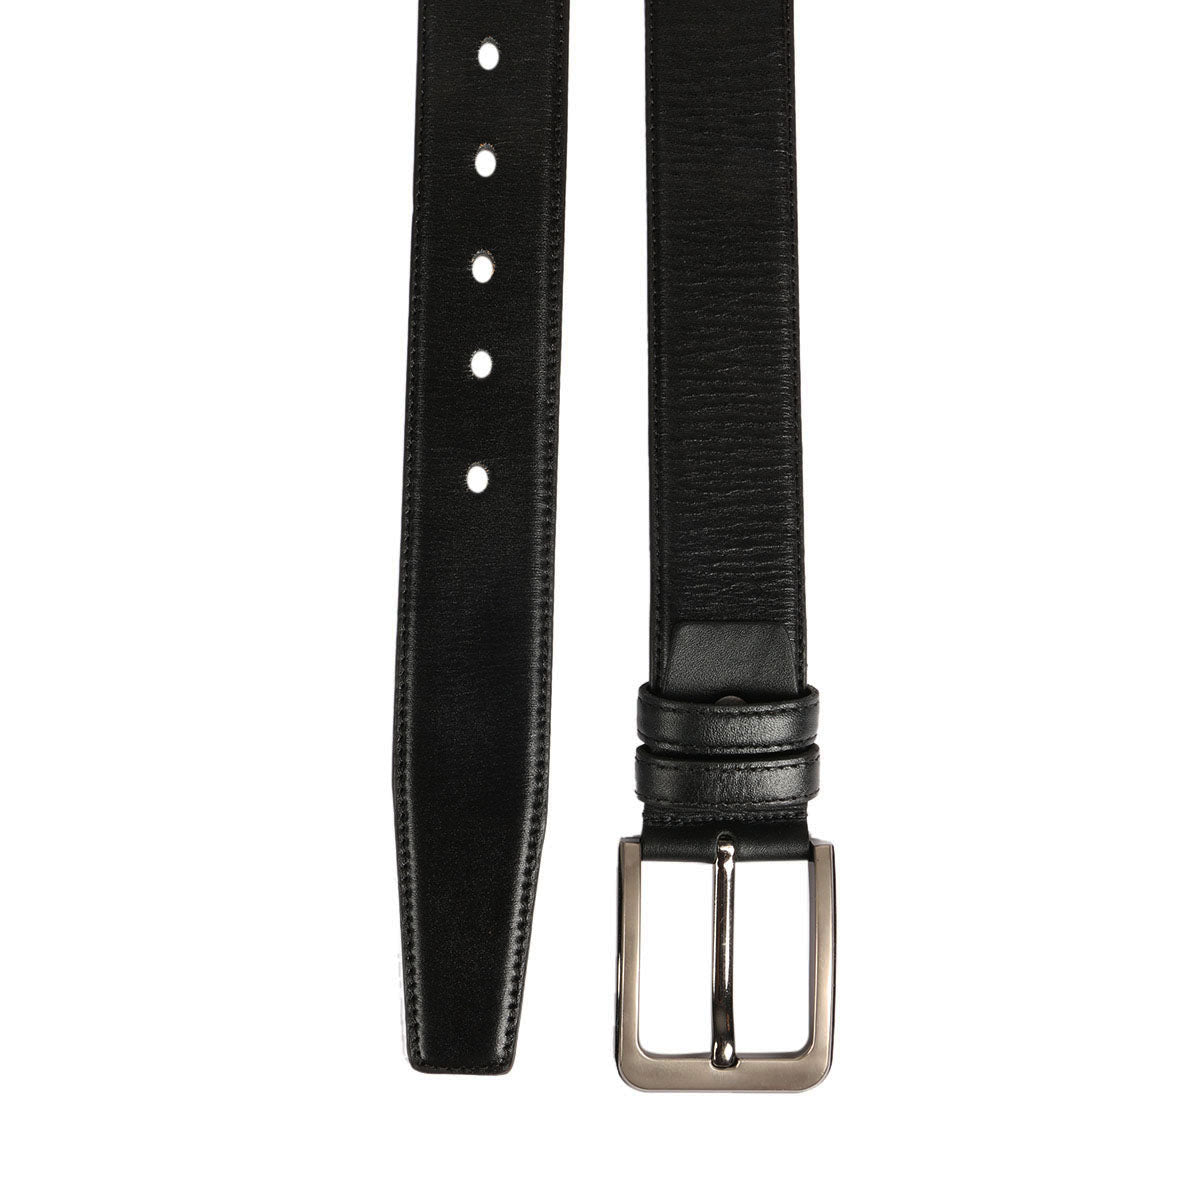 Zays Leather Belt for Men - (Black) BL01